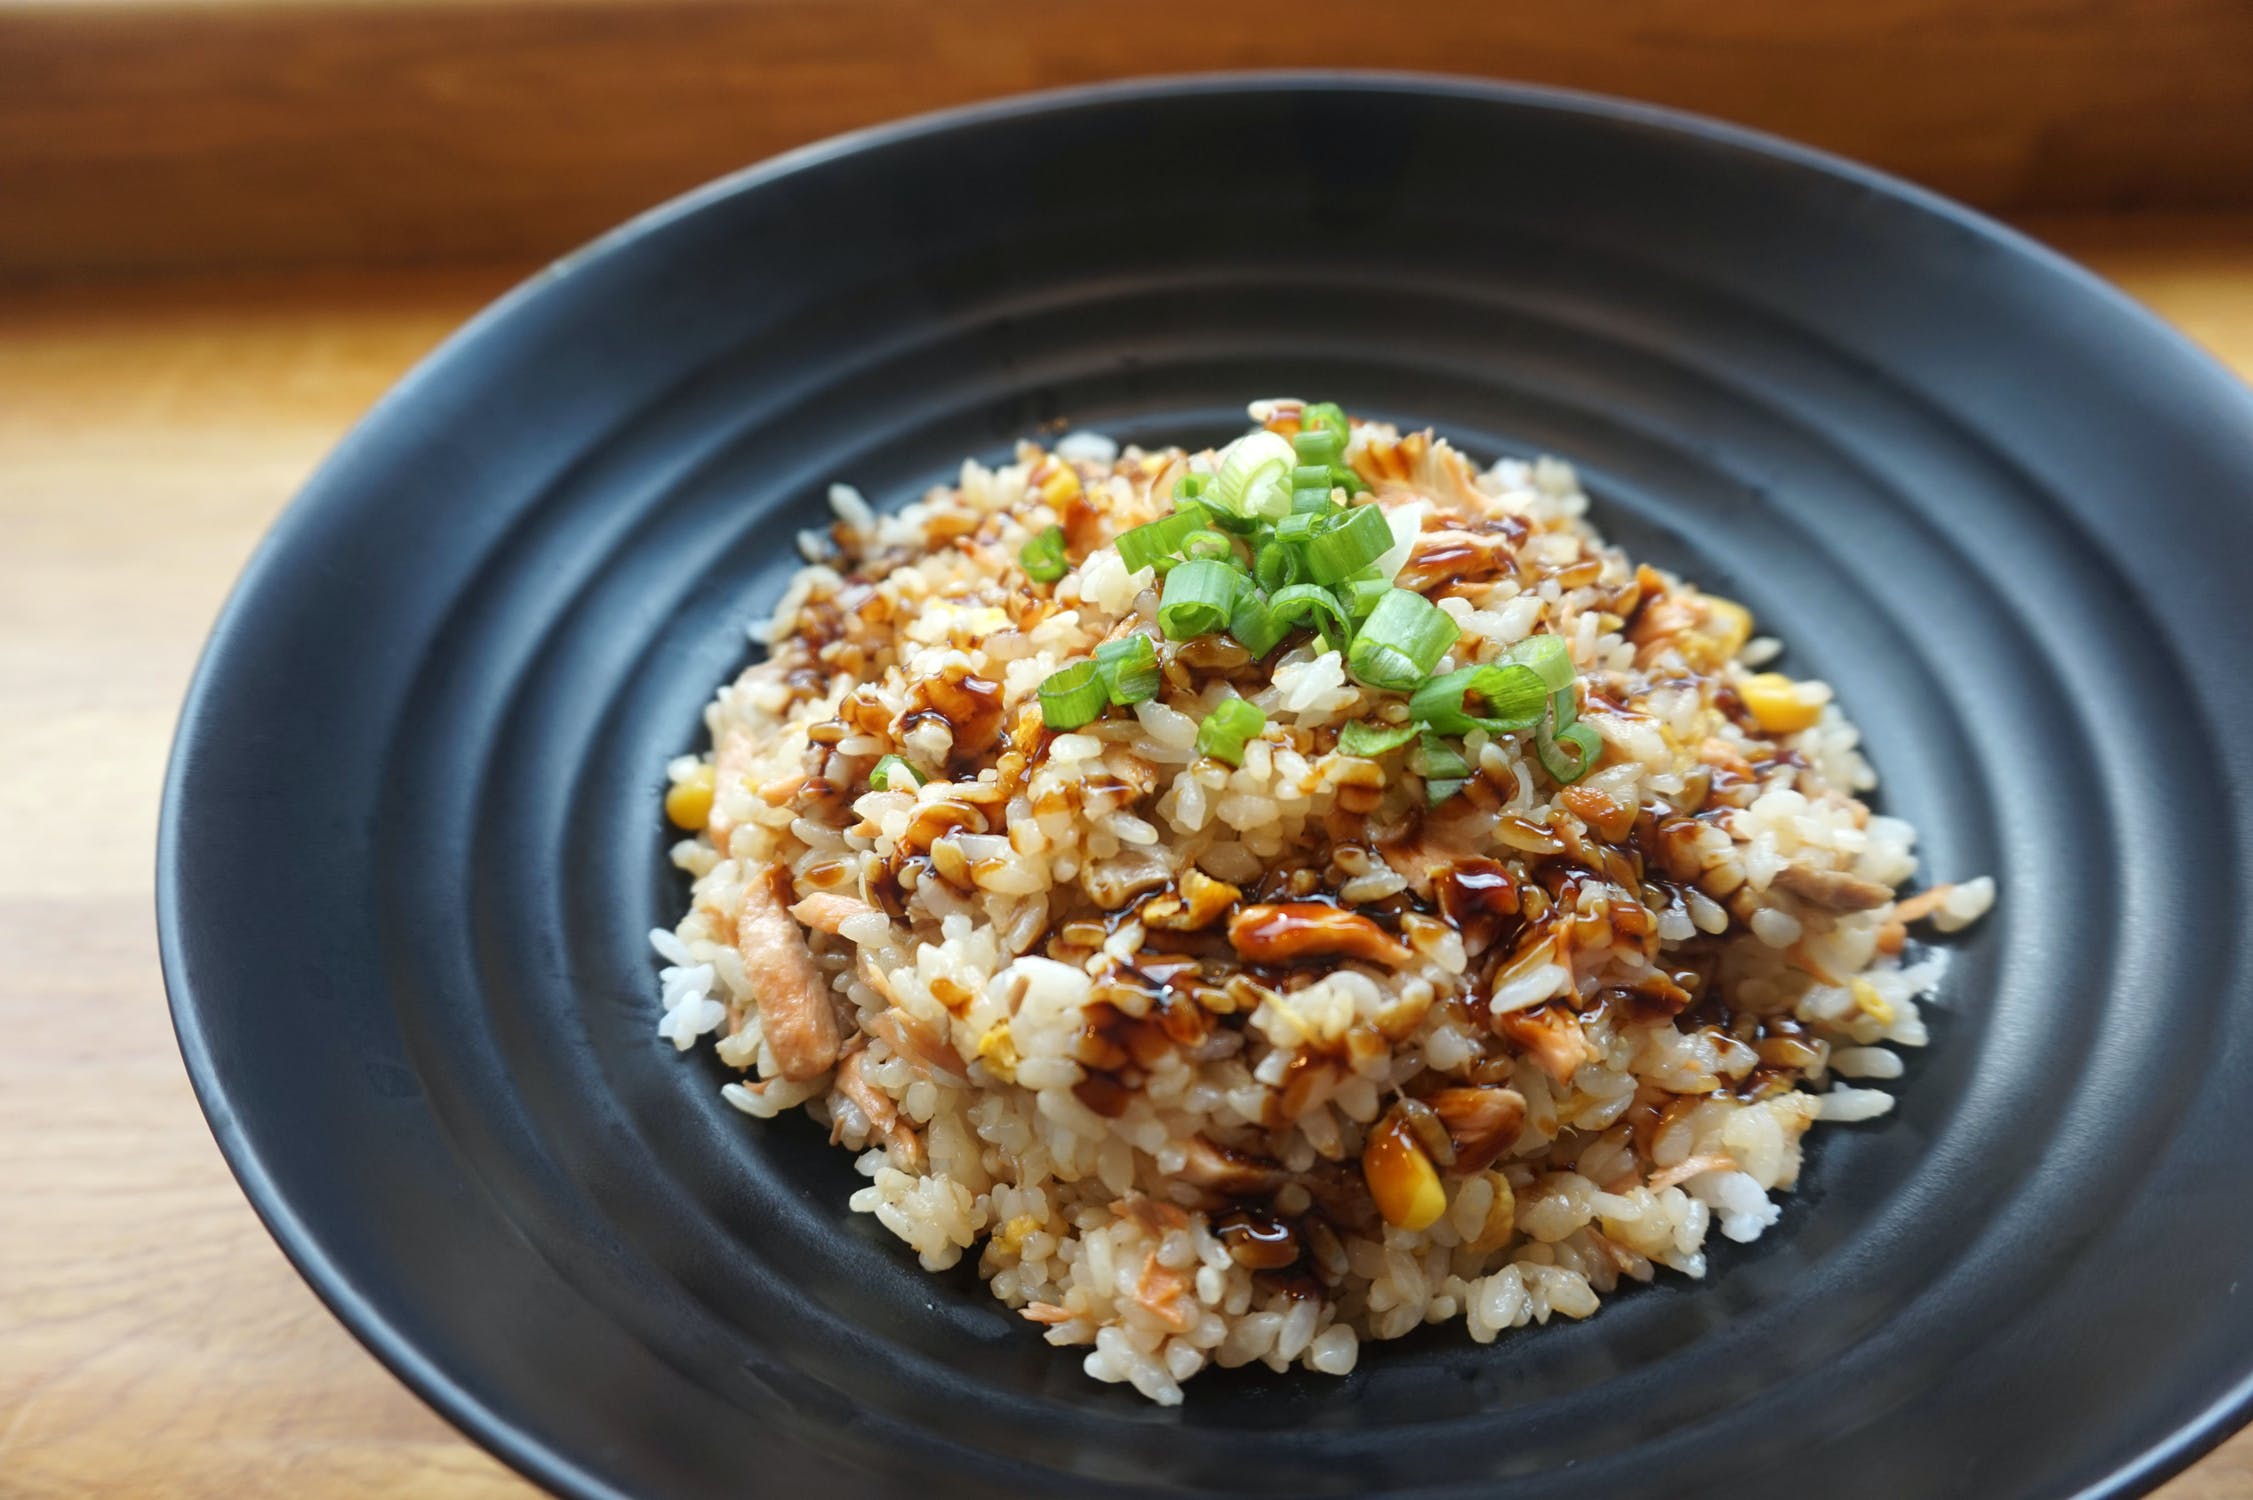 Σπυρωτό ρύζι – συνταγή: Το μυστικό για να είναι πάντα αφράτο